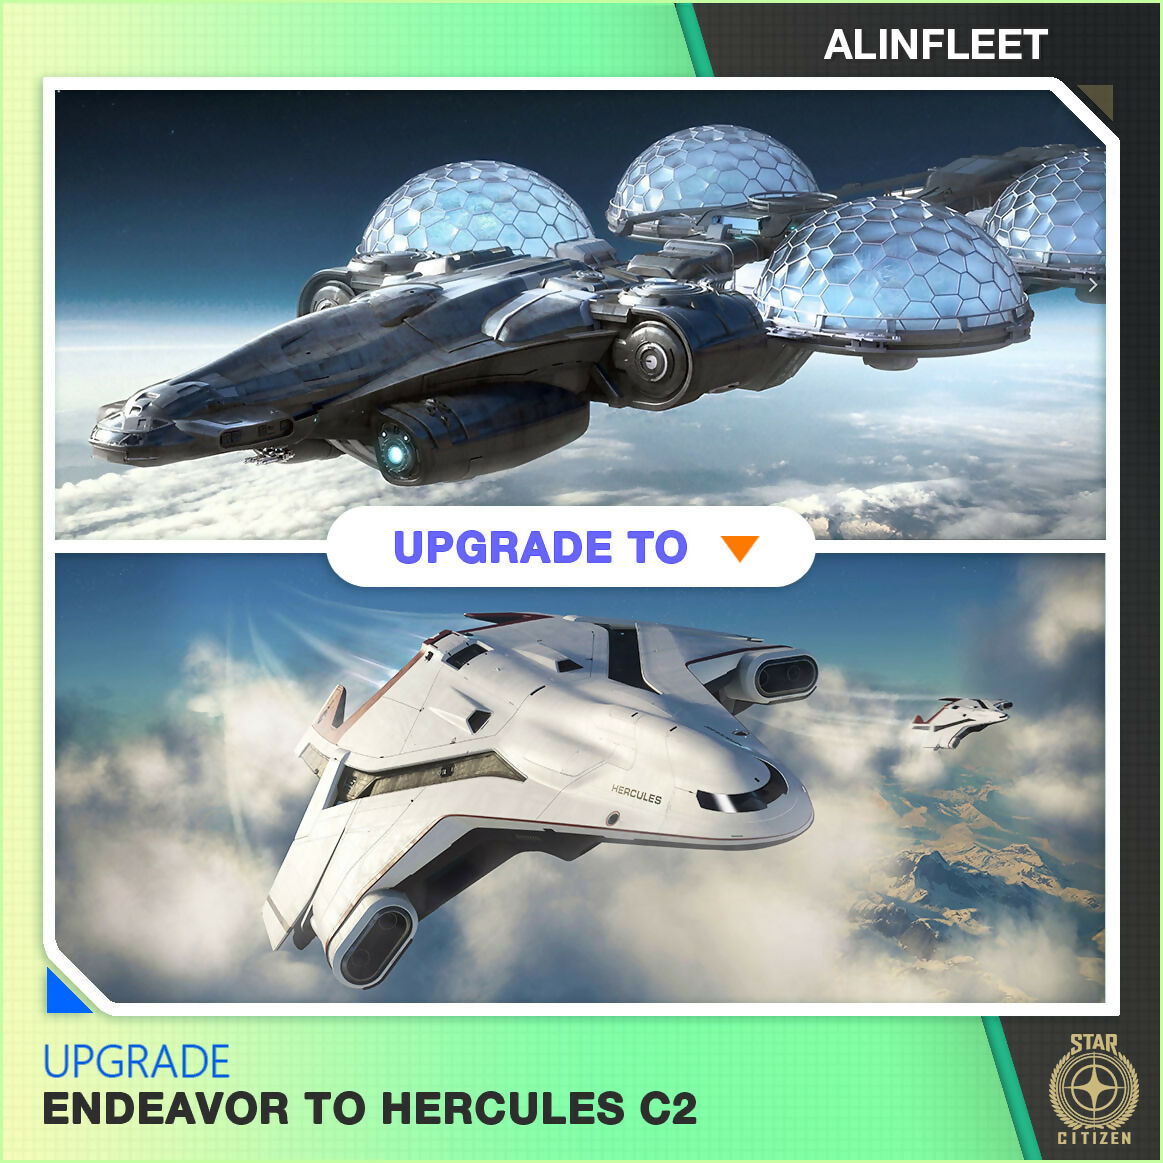 Upgrade - Endeavor to C2 Hercules